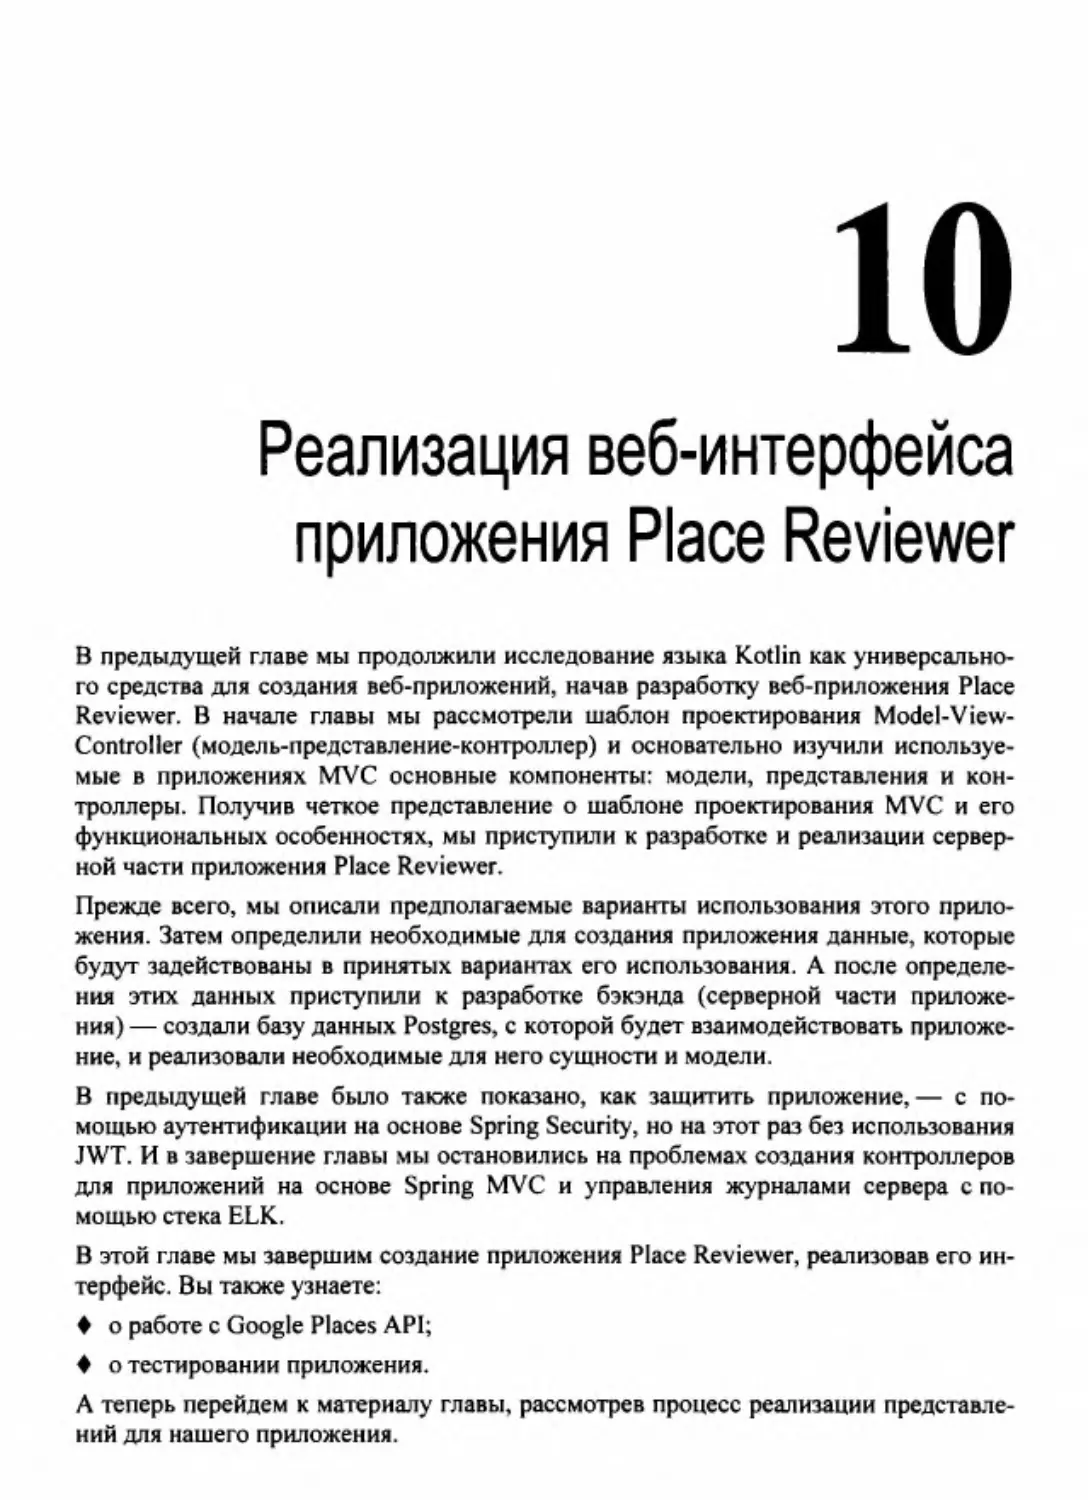 Глава 10. Реализация веб-интерфейса приложения Place Reviewer